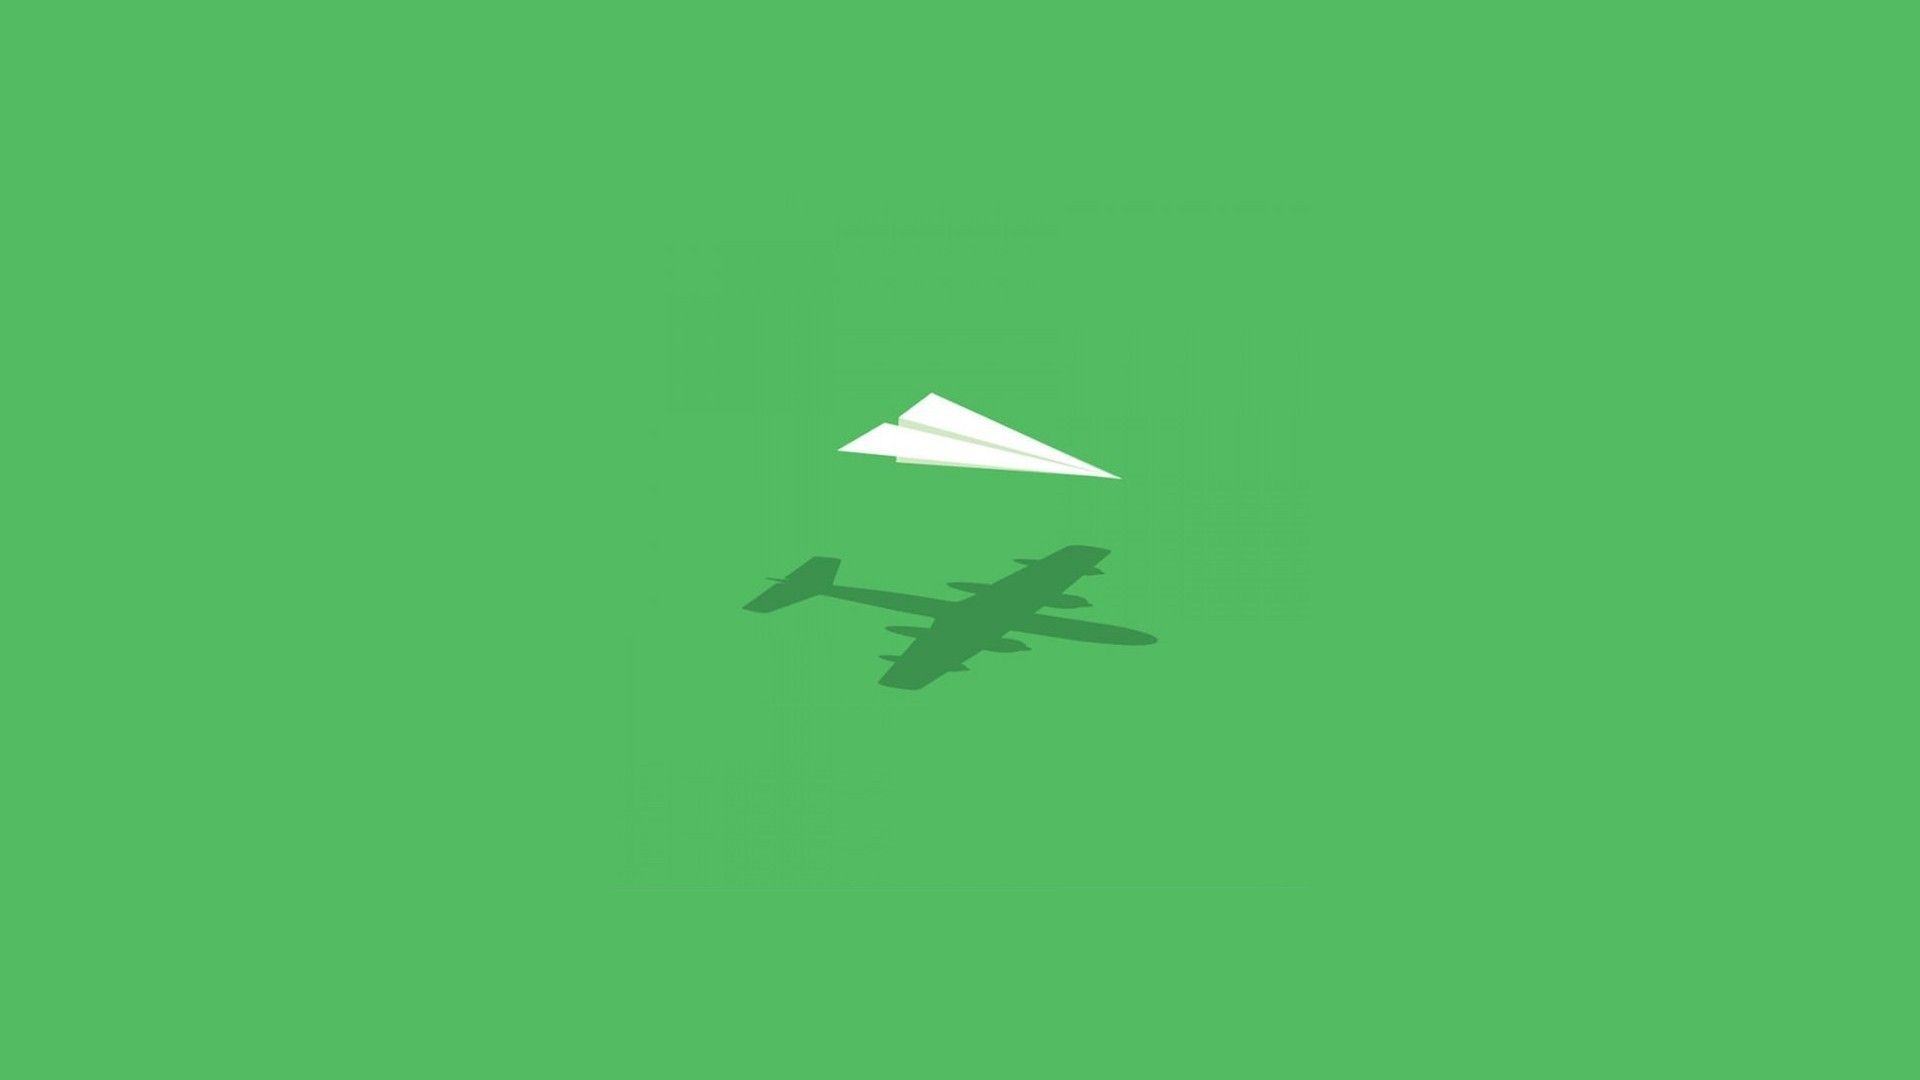 بک گراند جالب هواپیما کاغذی سفید در زمینه سبز مخصوص دسکتاپ